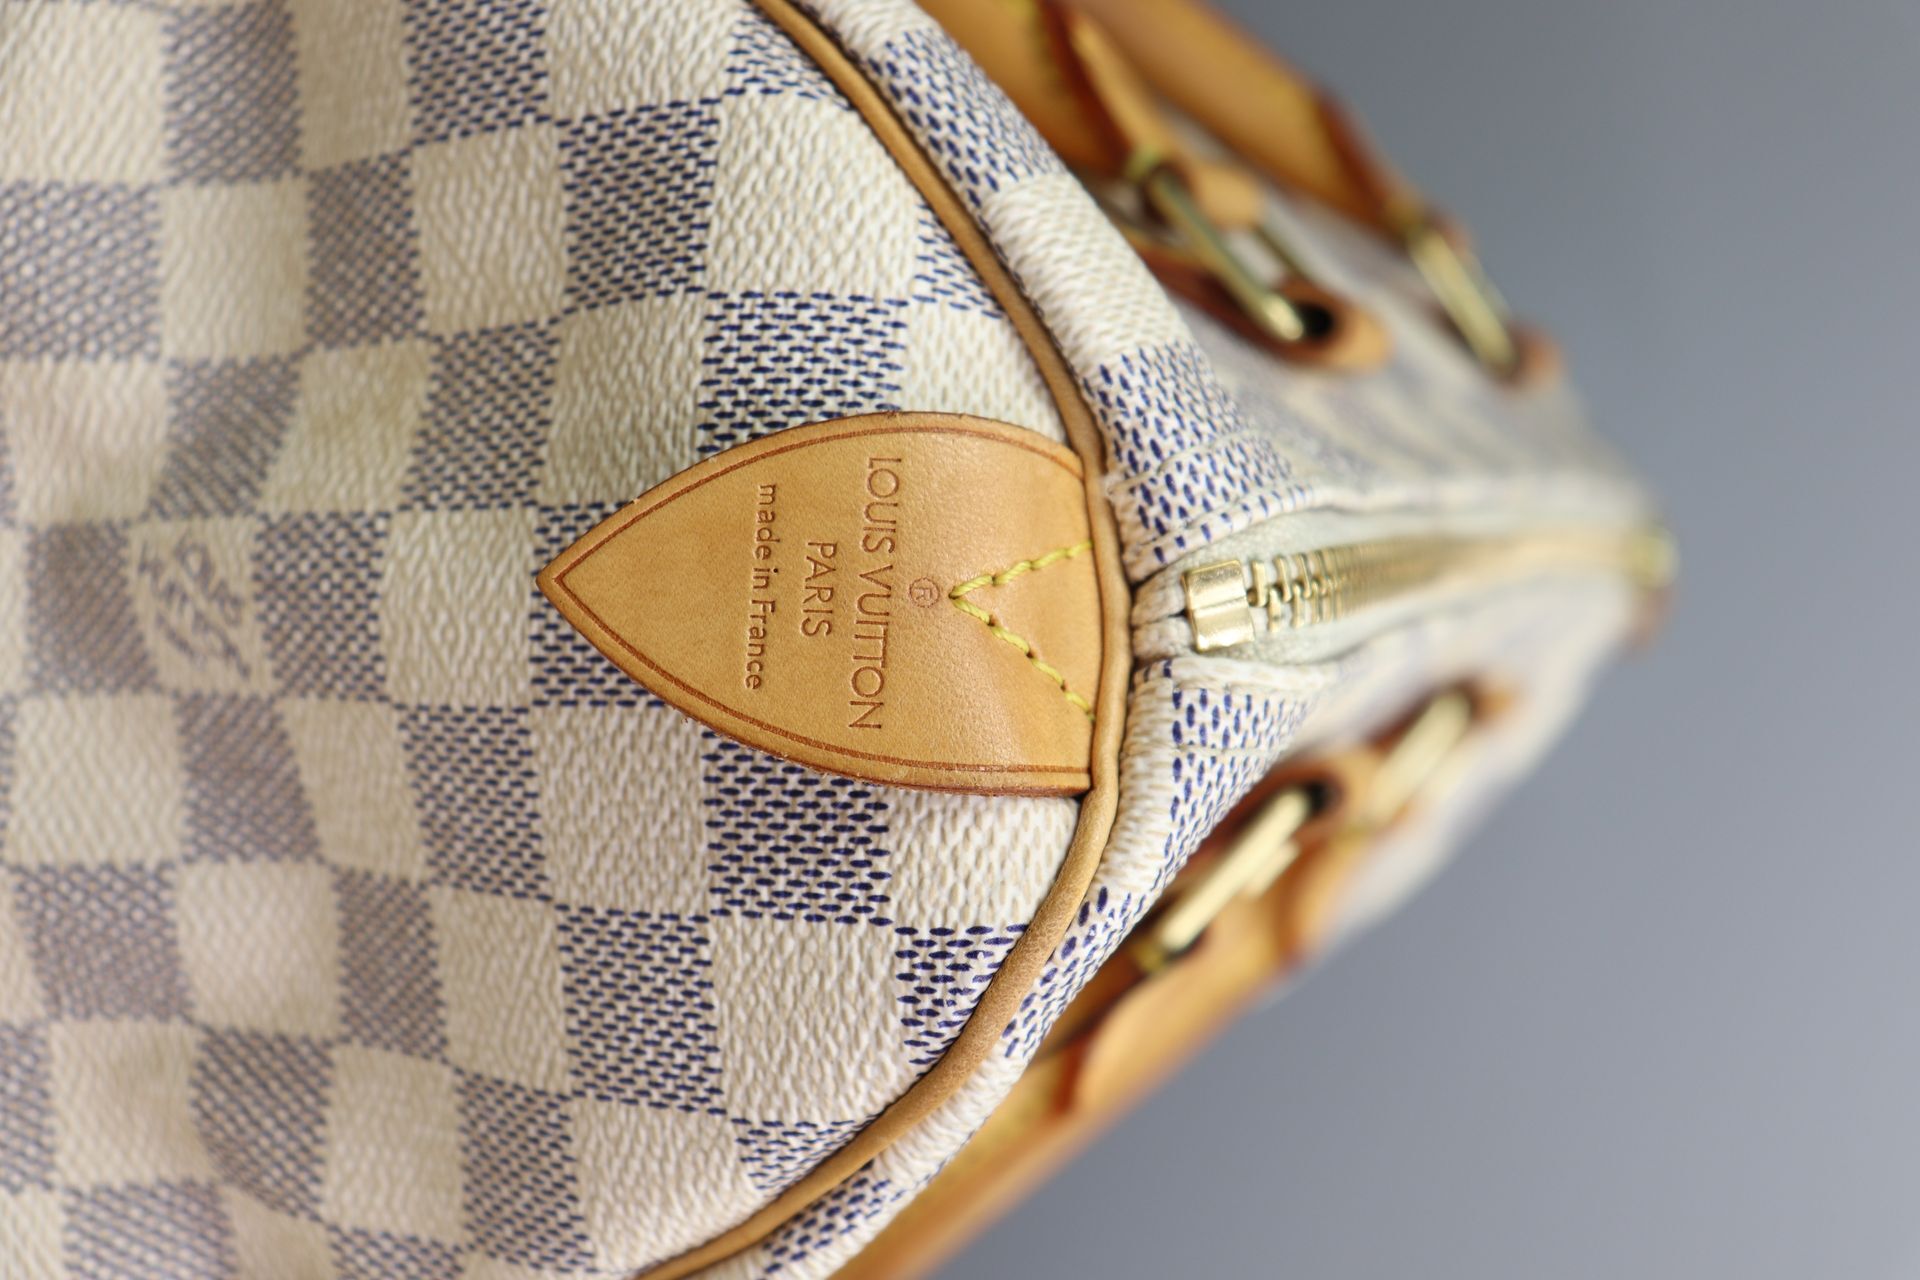 Louis Vuitton // 2019 Damier Azur Speedy Bandoulière 25 Bag – VSP